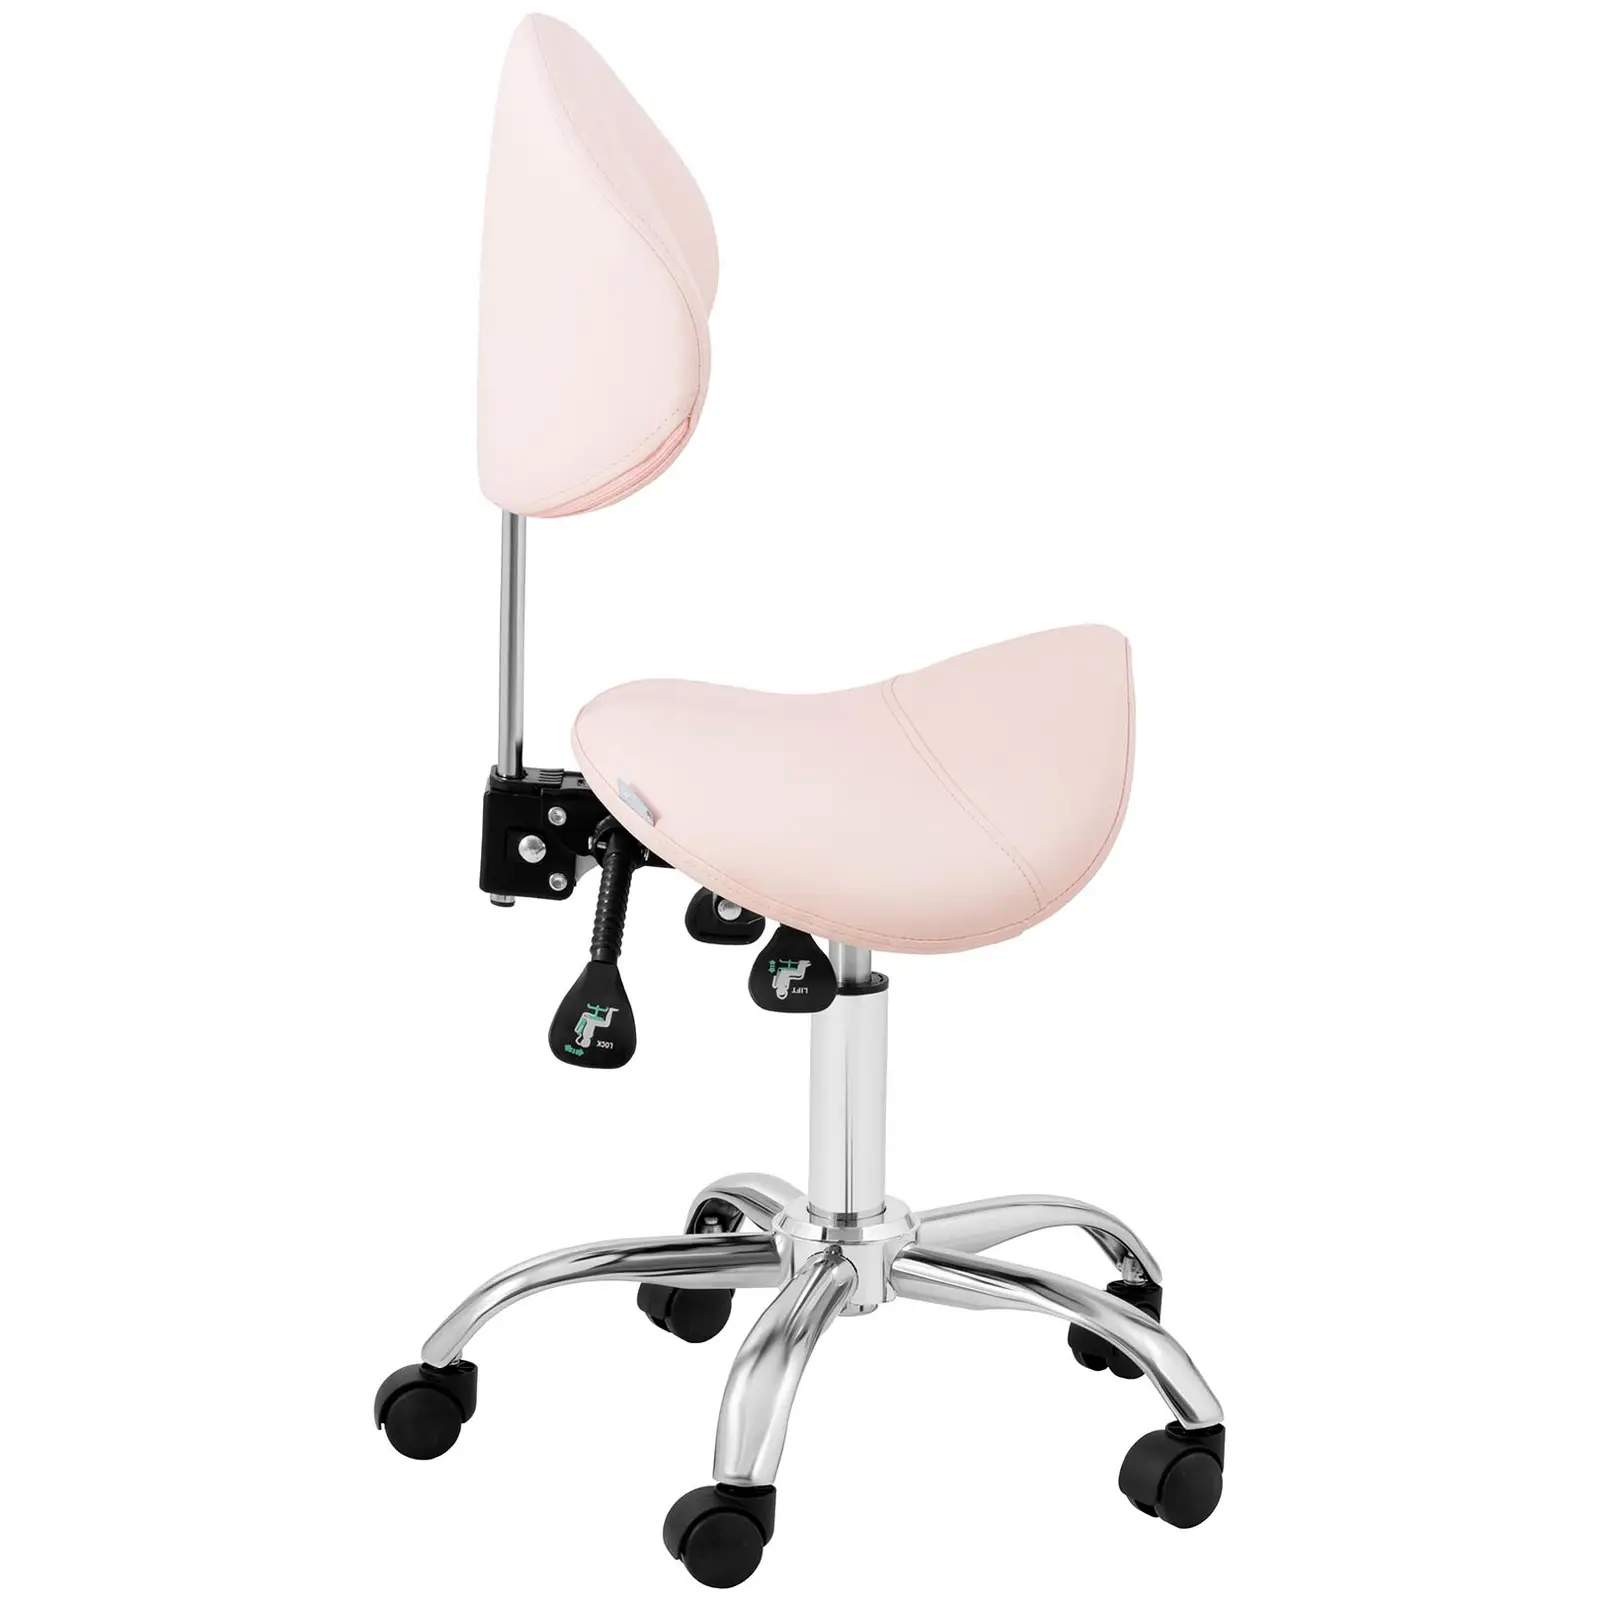 Krzesło siodłowe - oparcie i siedzisko z regulacją wysokości - 55-69 cm - 150 kg - Różowy, Srebrny